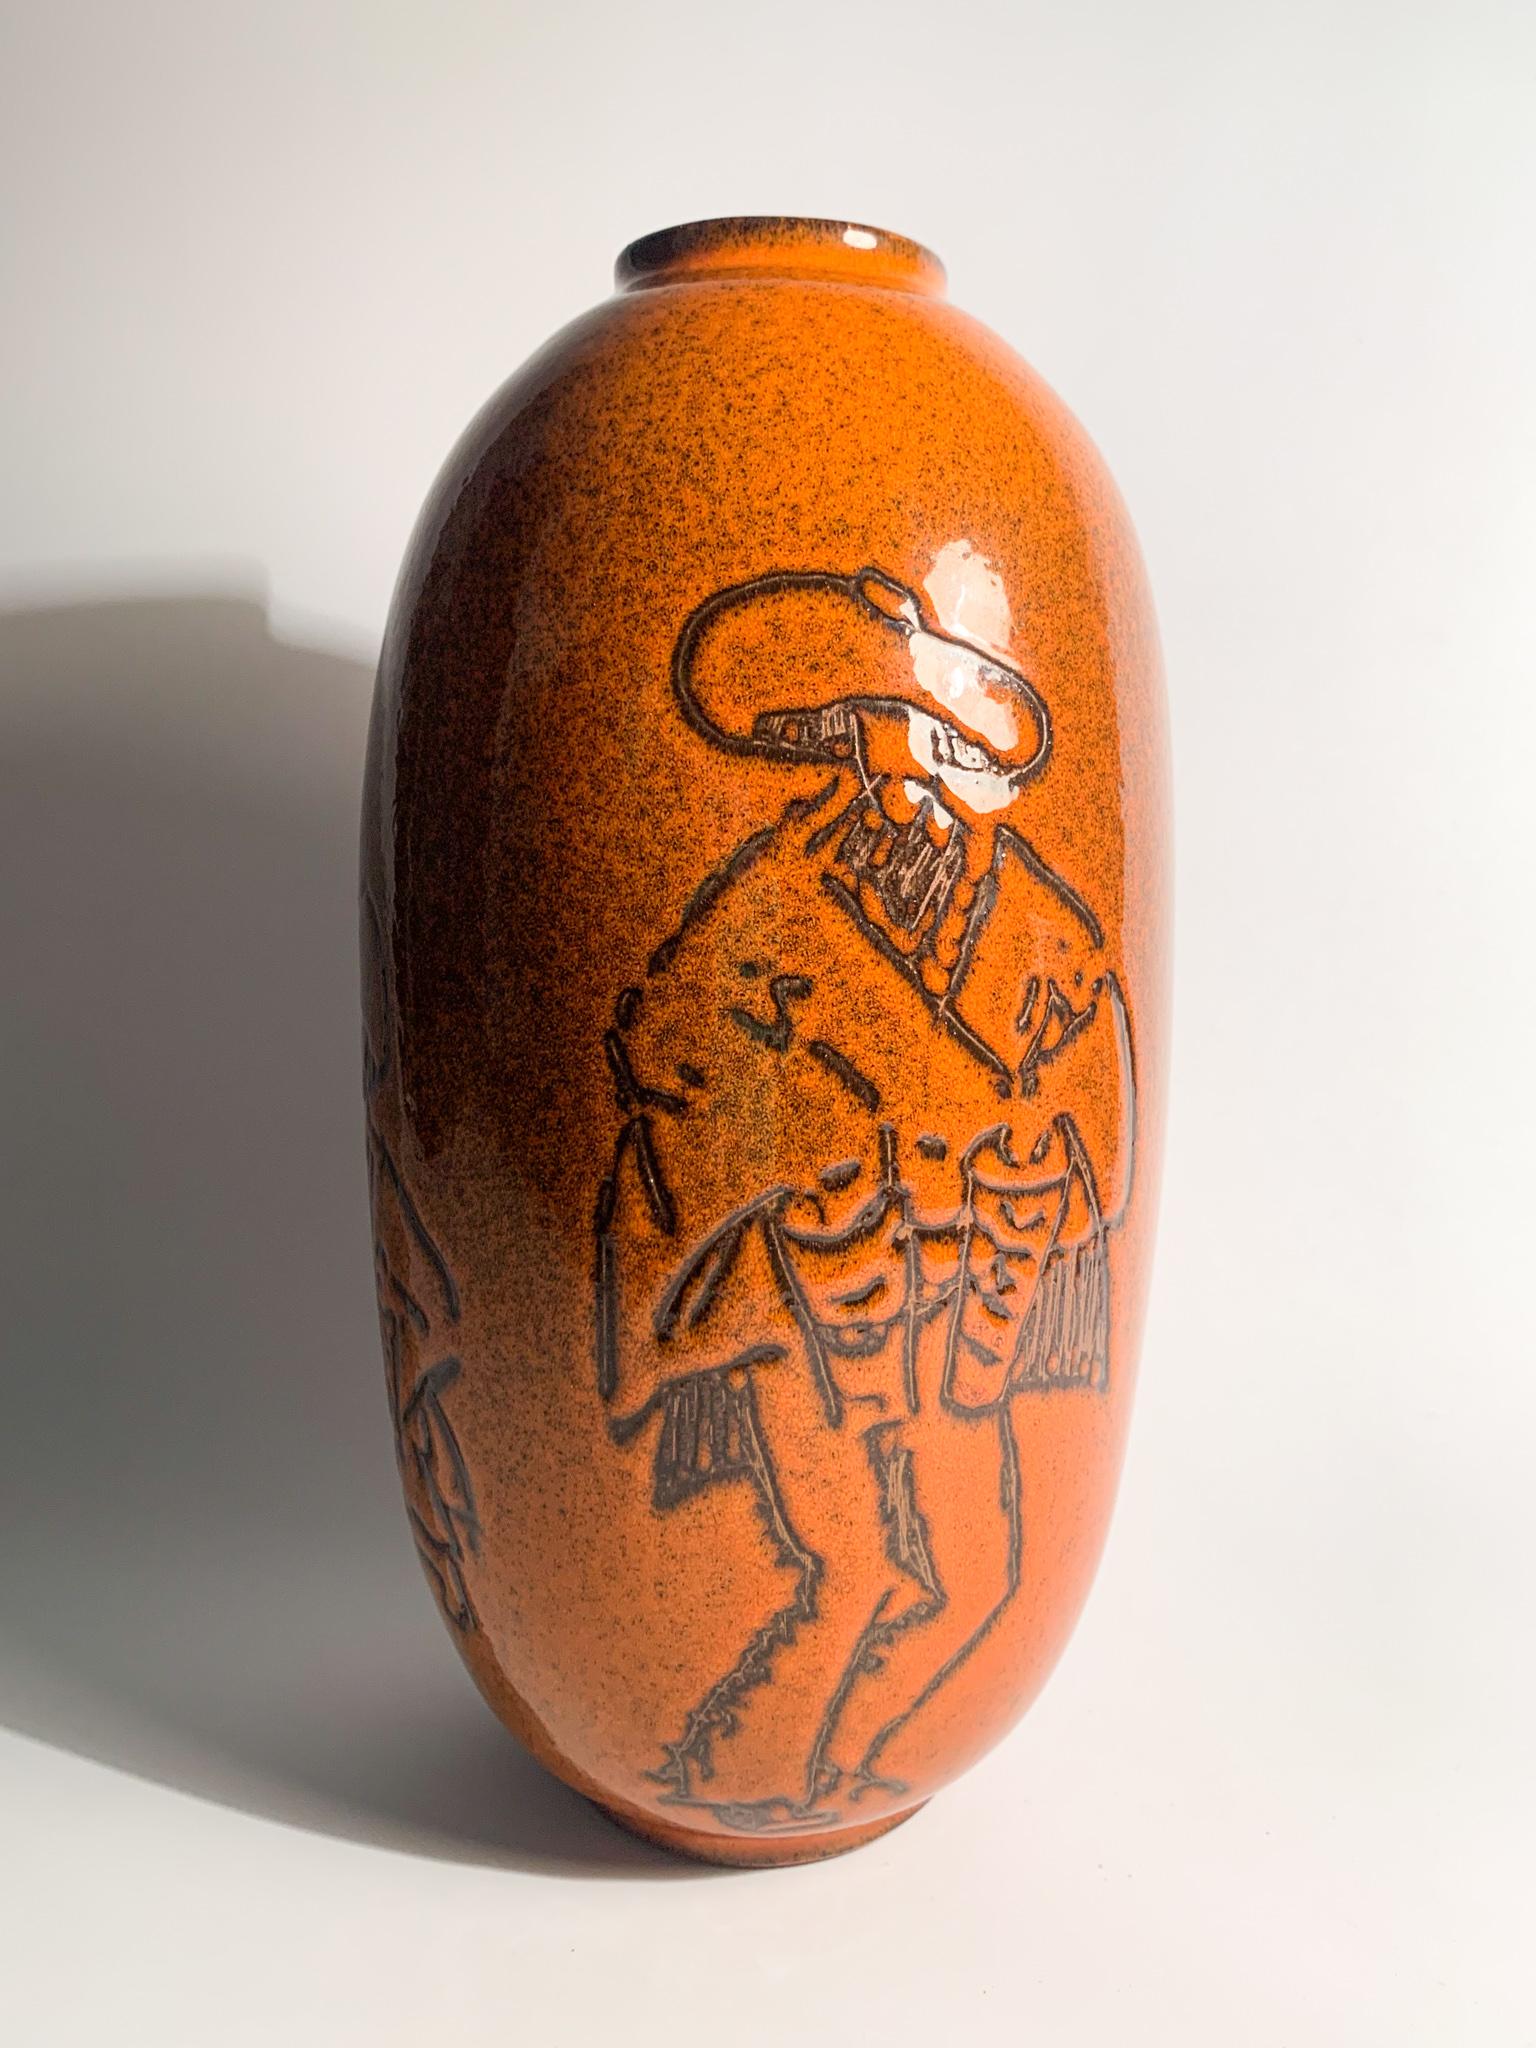 Vase en céramique Arcore orange, fabriqué dans les années 1950

Ø cm 13 h cm 23